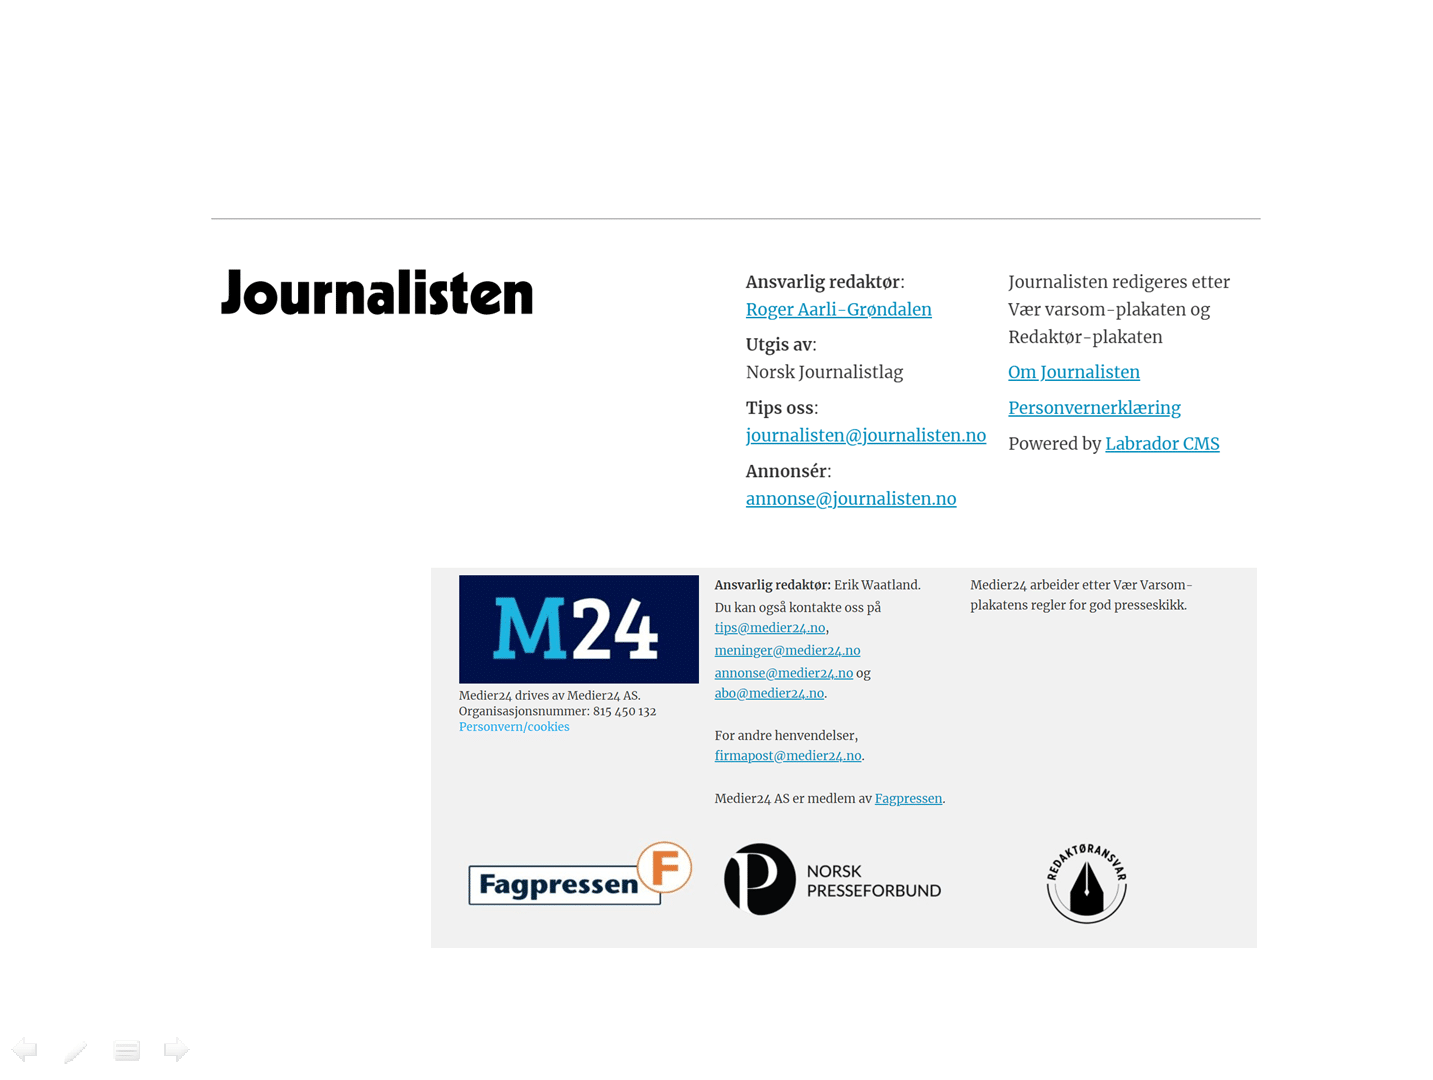 Om journalisten og medier24